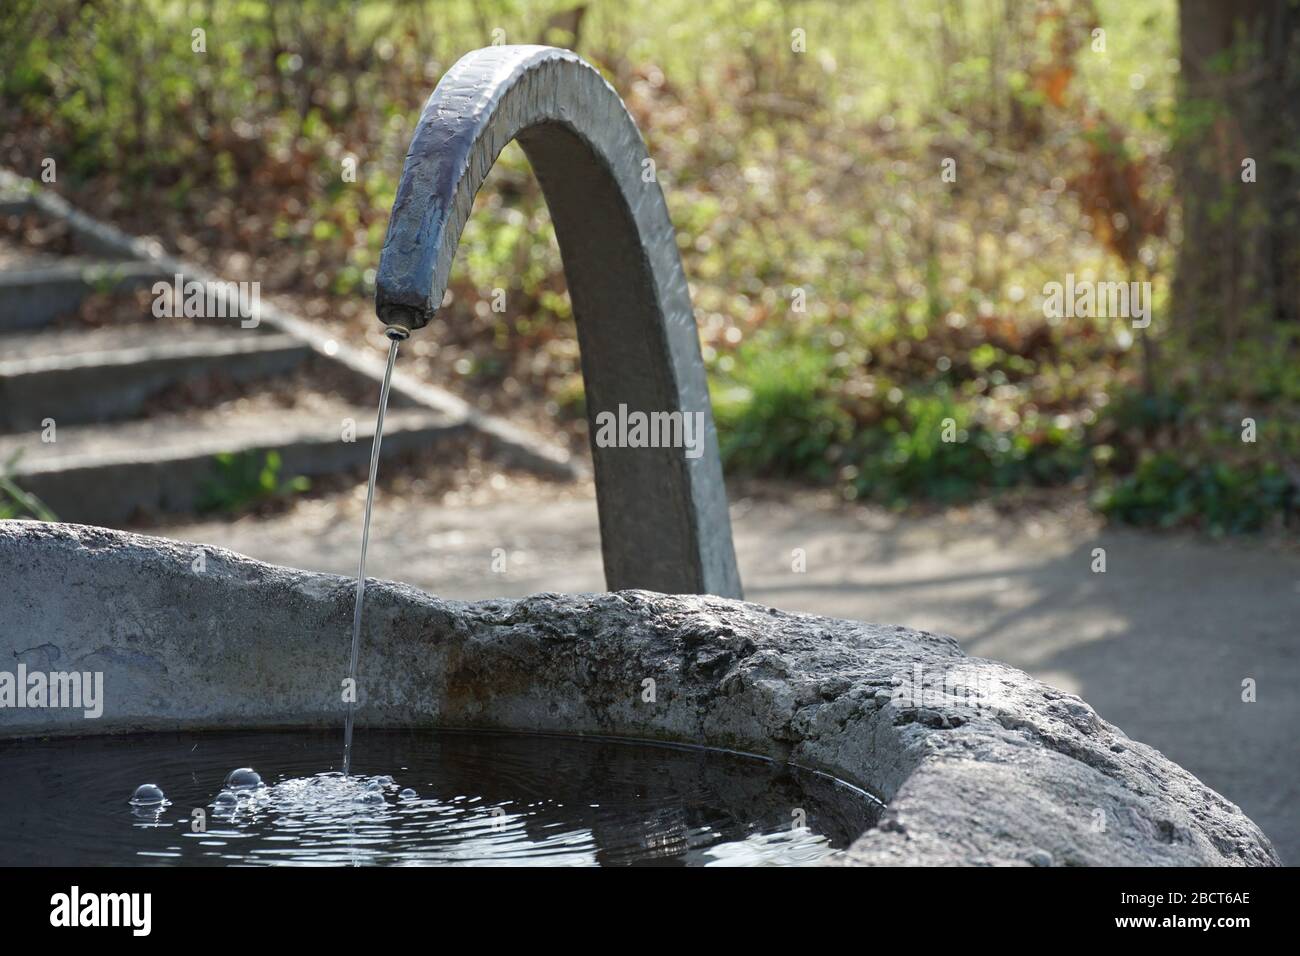 Ein kleiner Trinkbrunnen aus Stein und Metall, eine Quelle von Trinkwasser, die für jeden im öffentlichen Raum kostenlos zugänglich ist Stockfoto